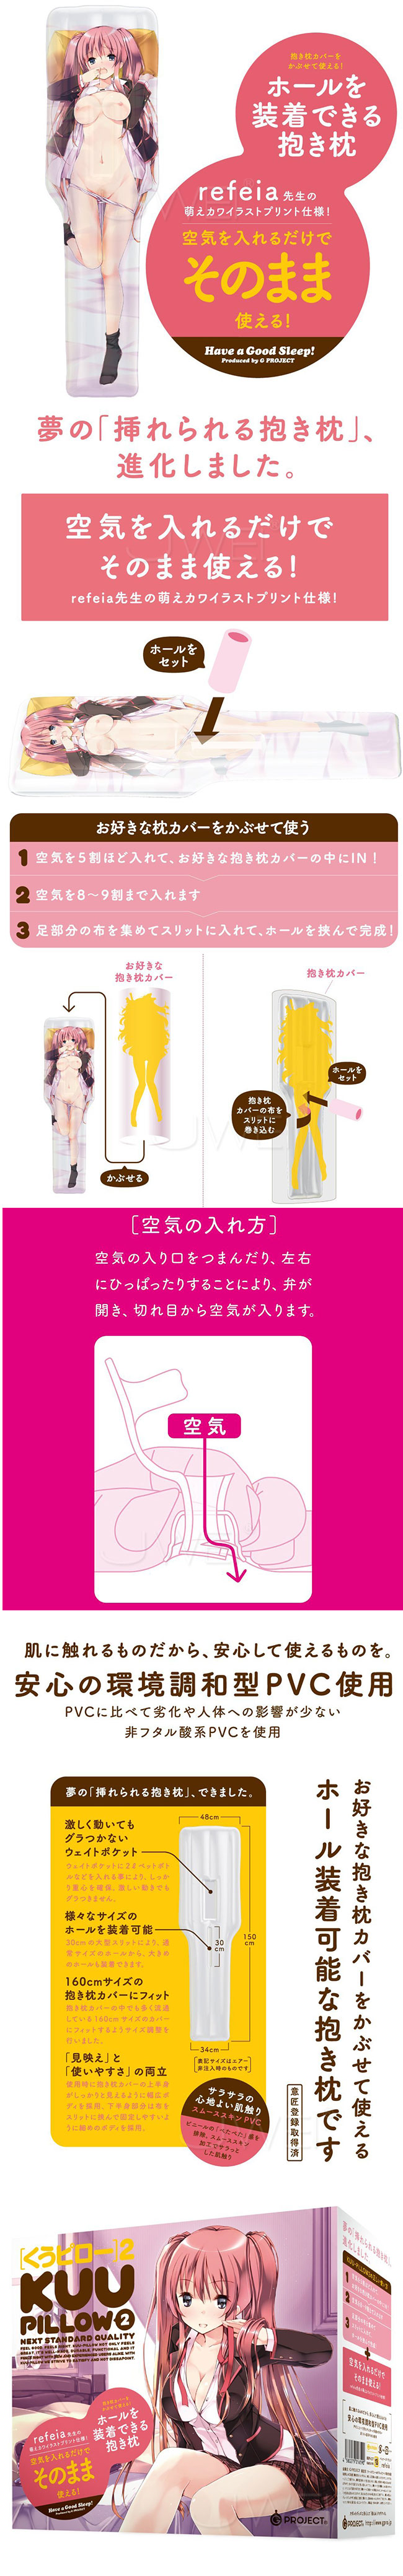 日本原裝進口EXE G PROJECT KUU-PILLOW 2美少女擁抱型充氣抱枕